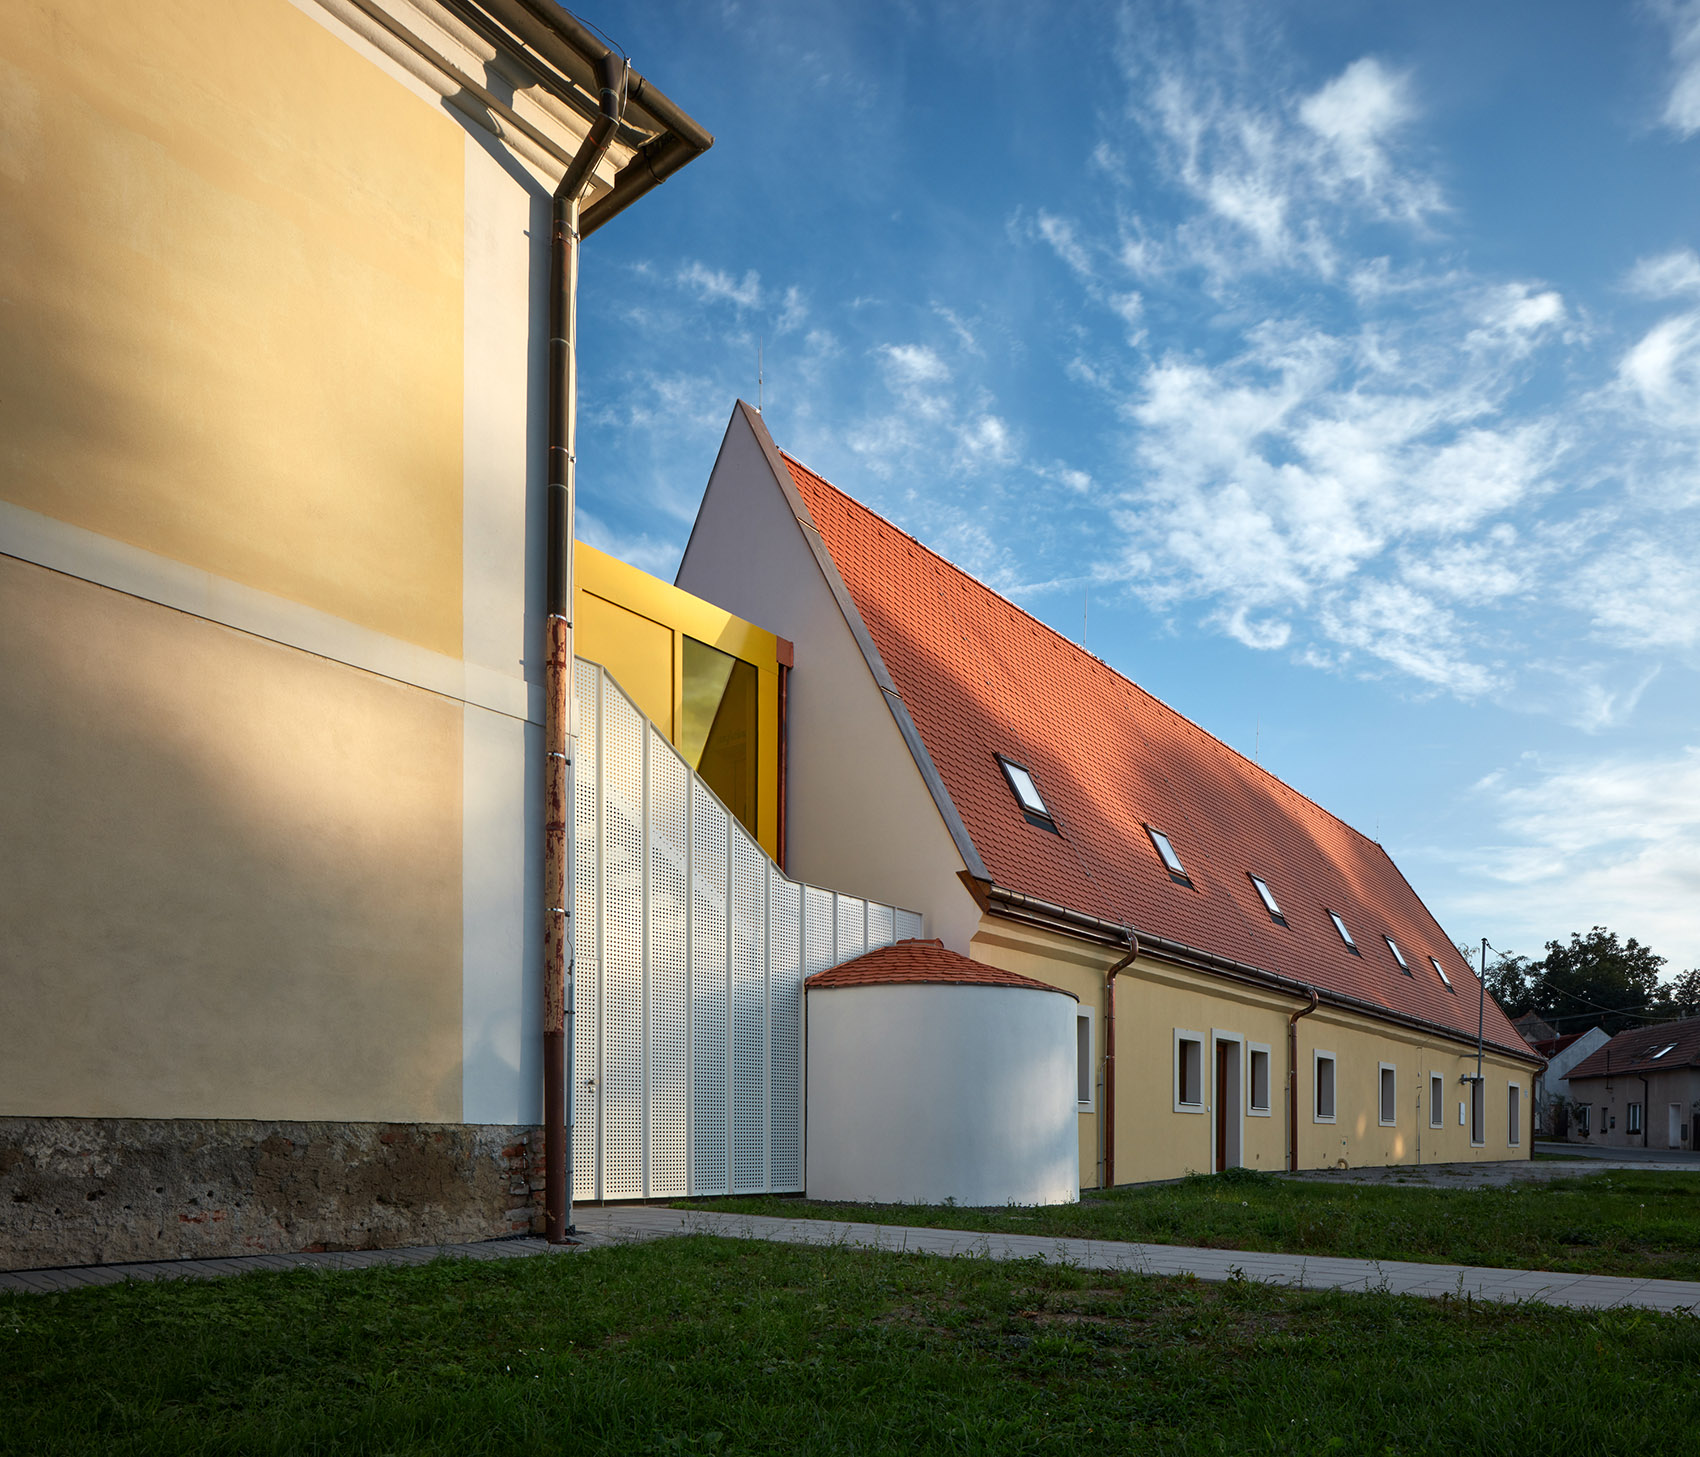 Vřesovice小学改造与扩建，捷克/在教育领域“发挥余热”的宗教建筑-63